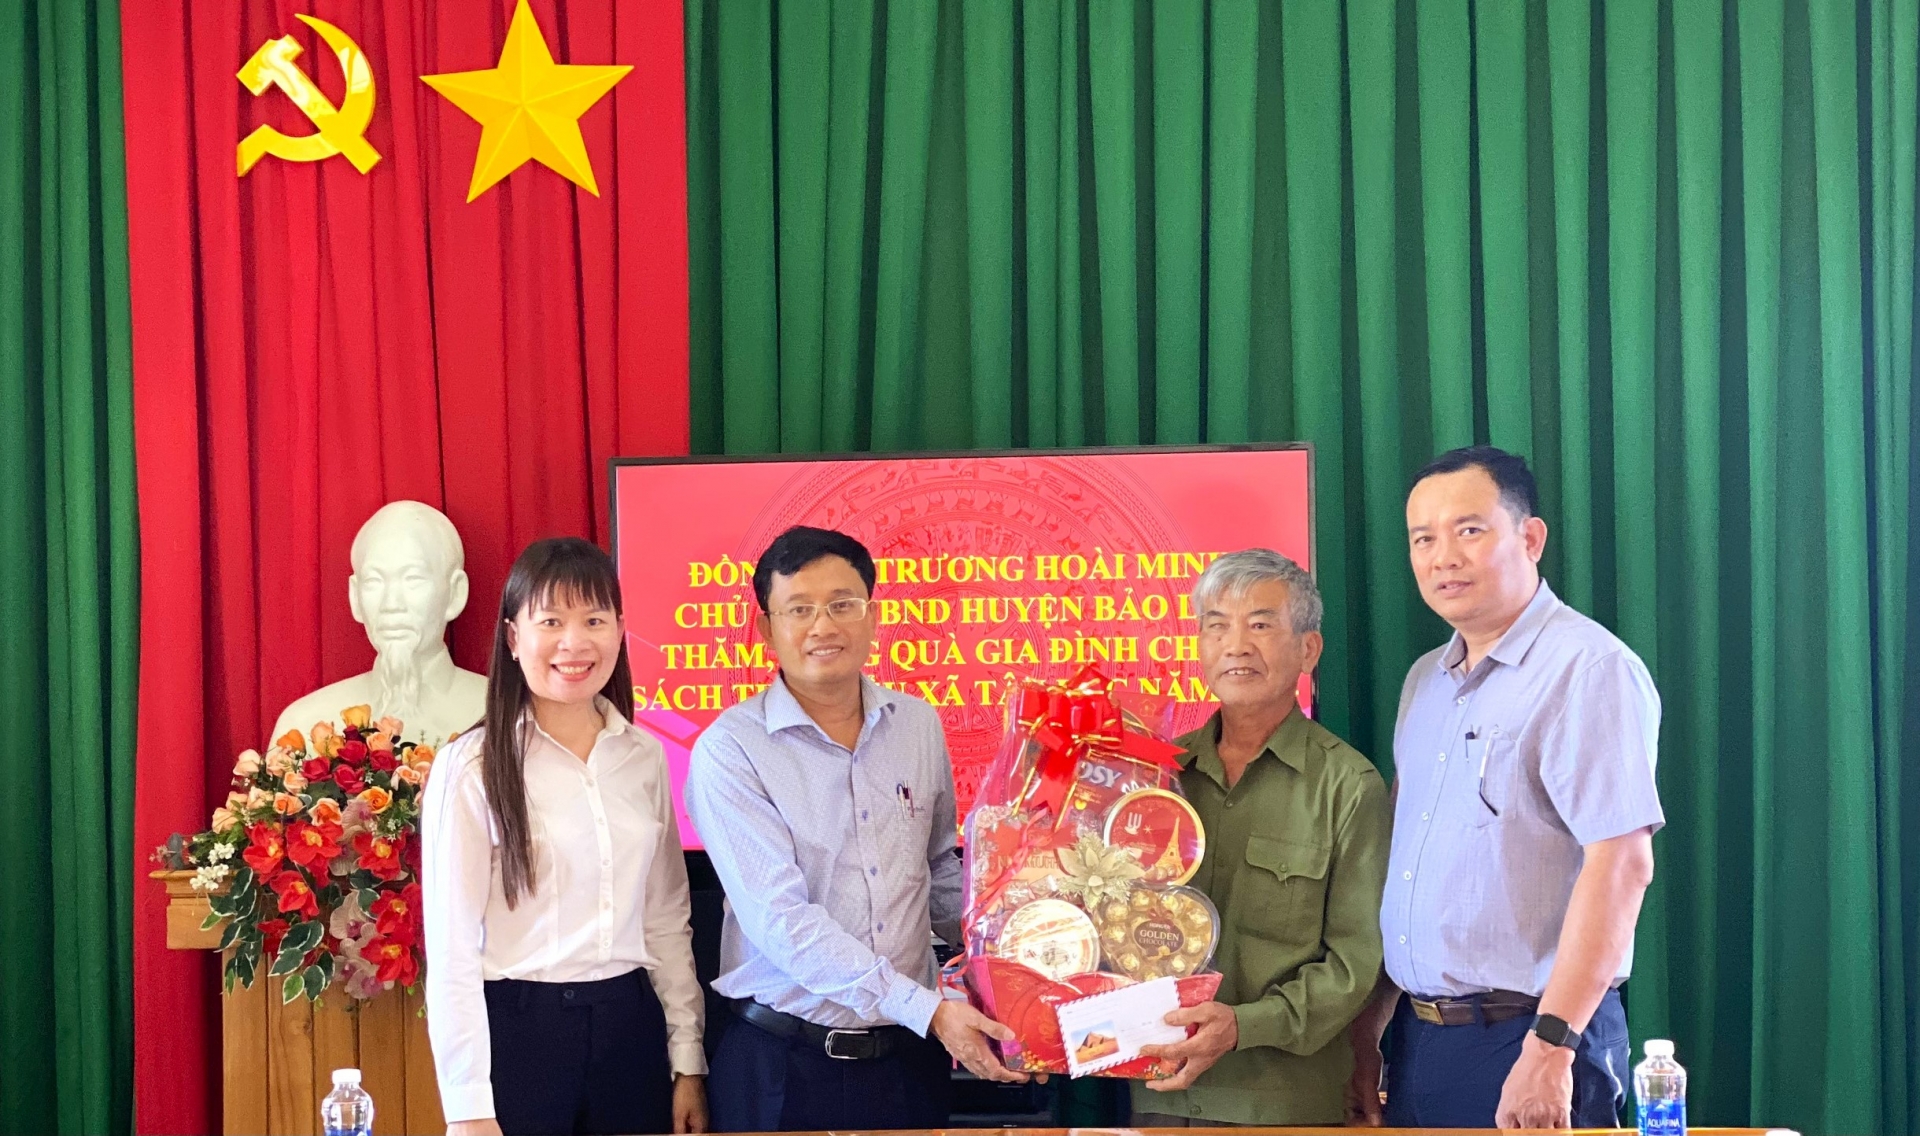 Chủ tịch UBND huyện Bảo Lâm thăm, tặng quà Tết các gia đình người có công với cách mạng trên địa bàn huyện